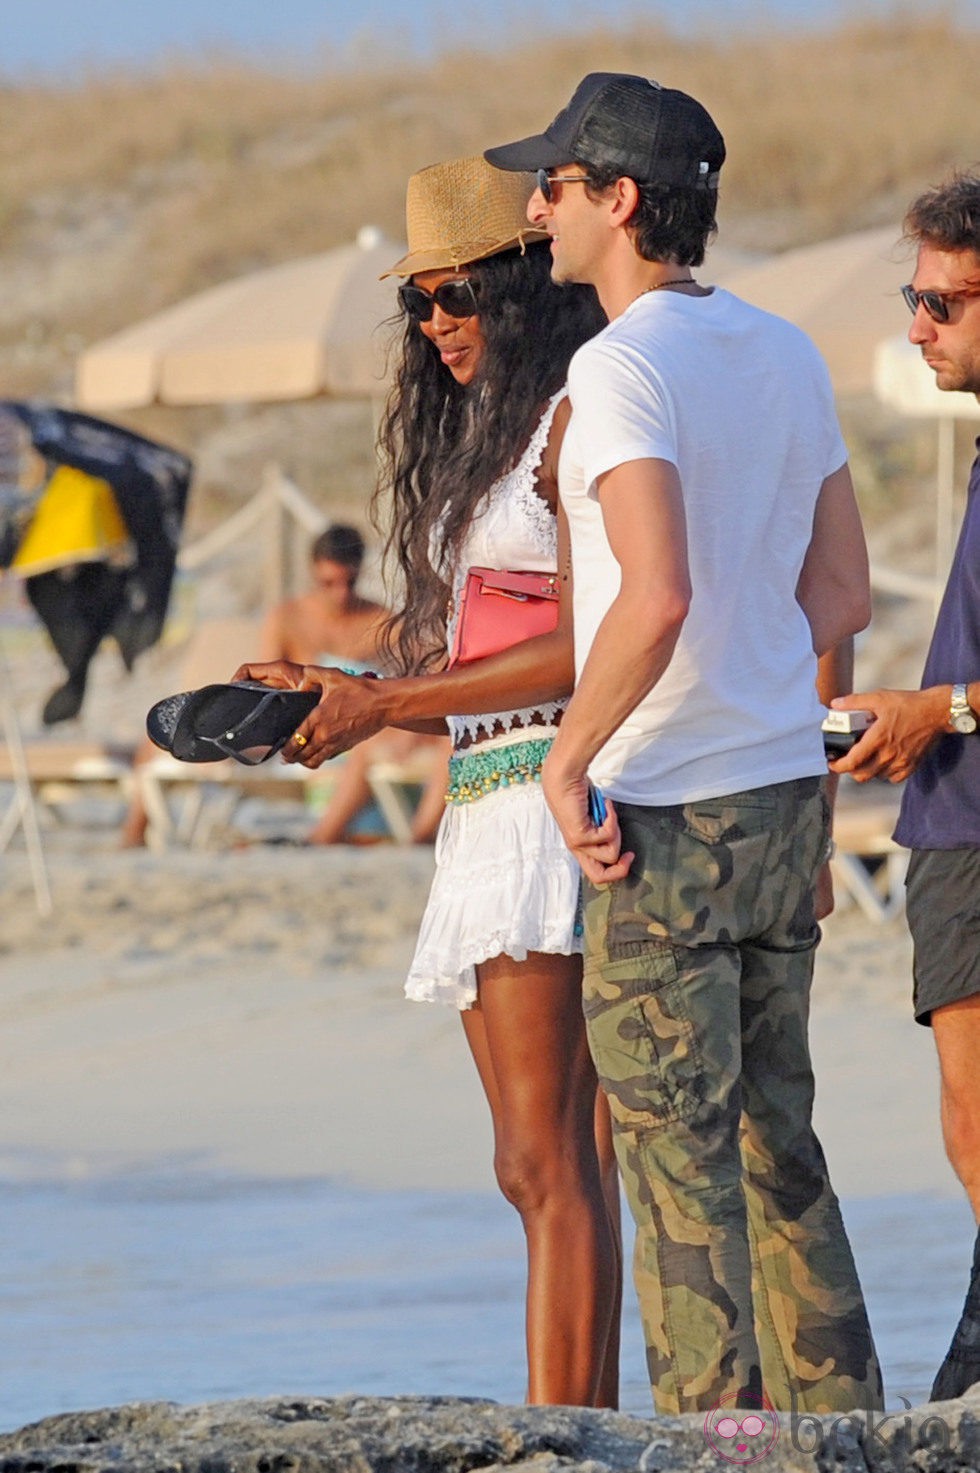 Naomi Campbell y Adrien Brody disfrutando de la playa de Formentera